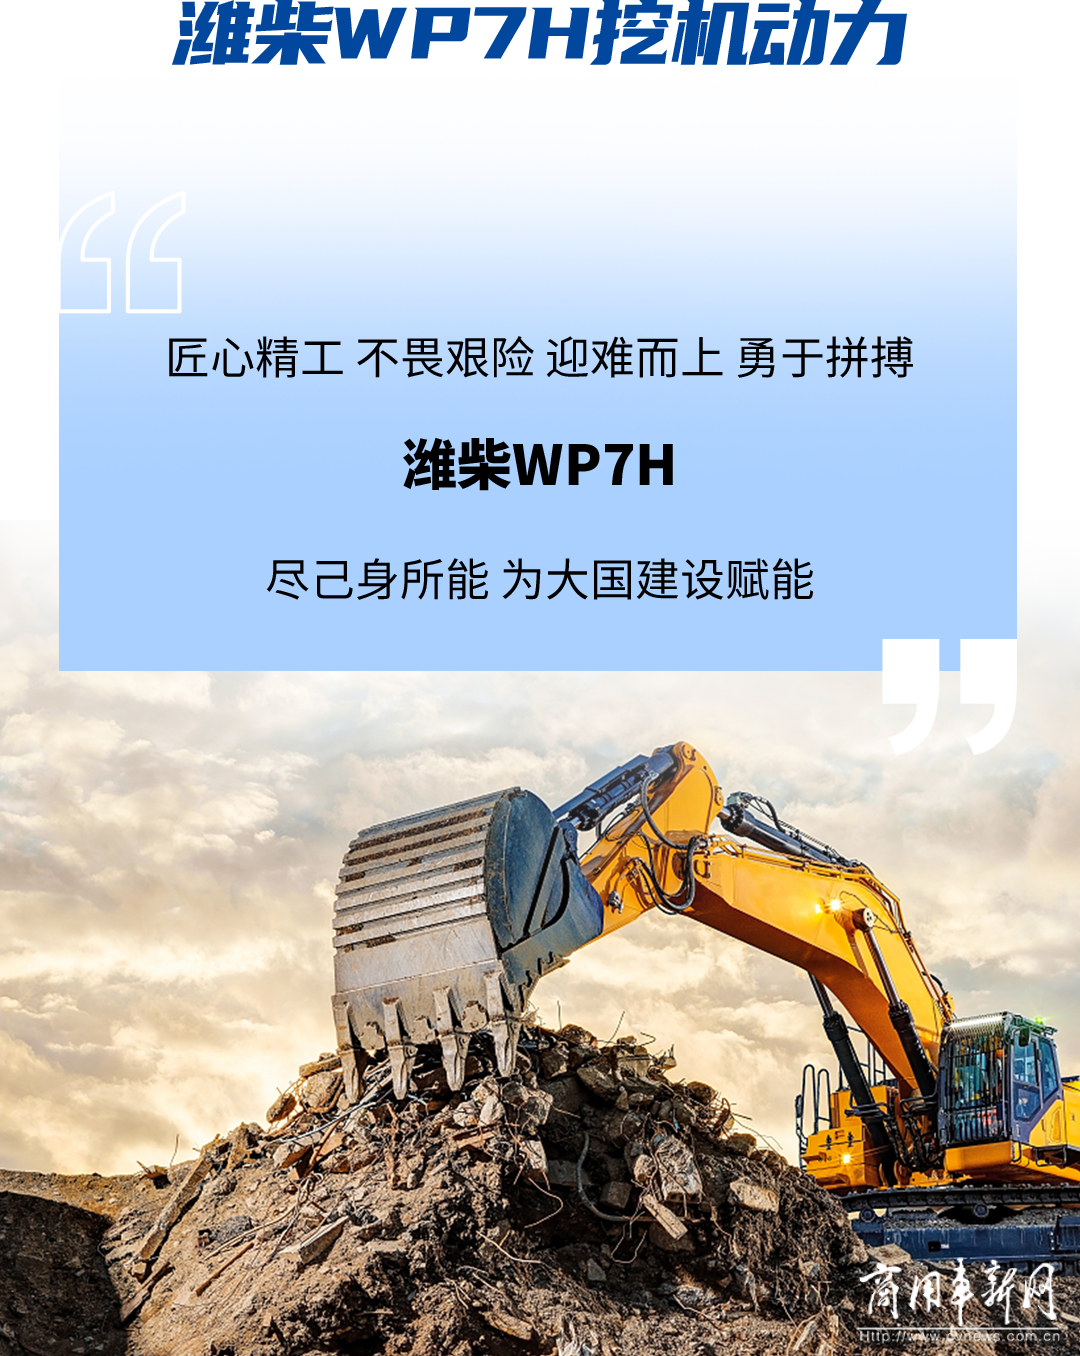 “掘”佳力量，潍柴WP7H引领建设新面貌，为大国基建赋能